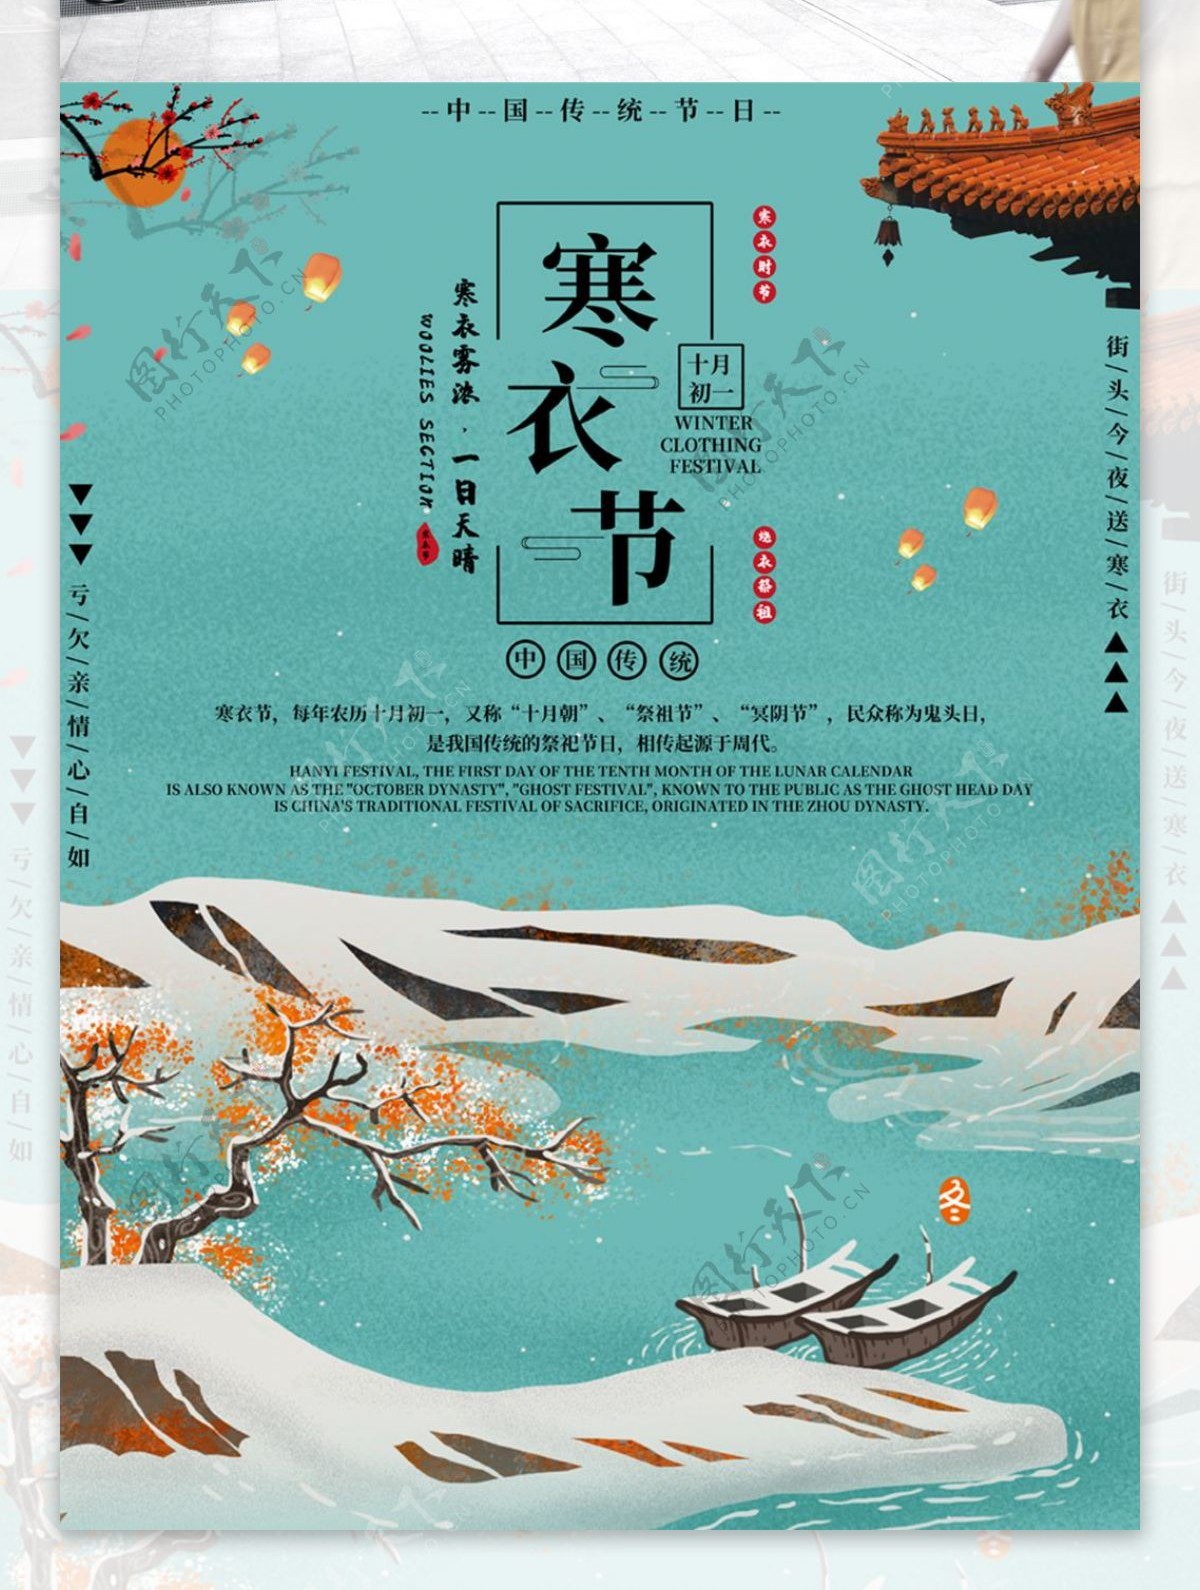 简约大气中国风寒衣节节日海报